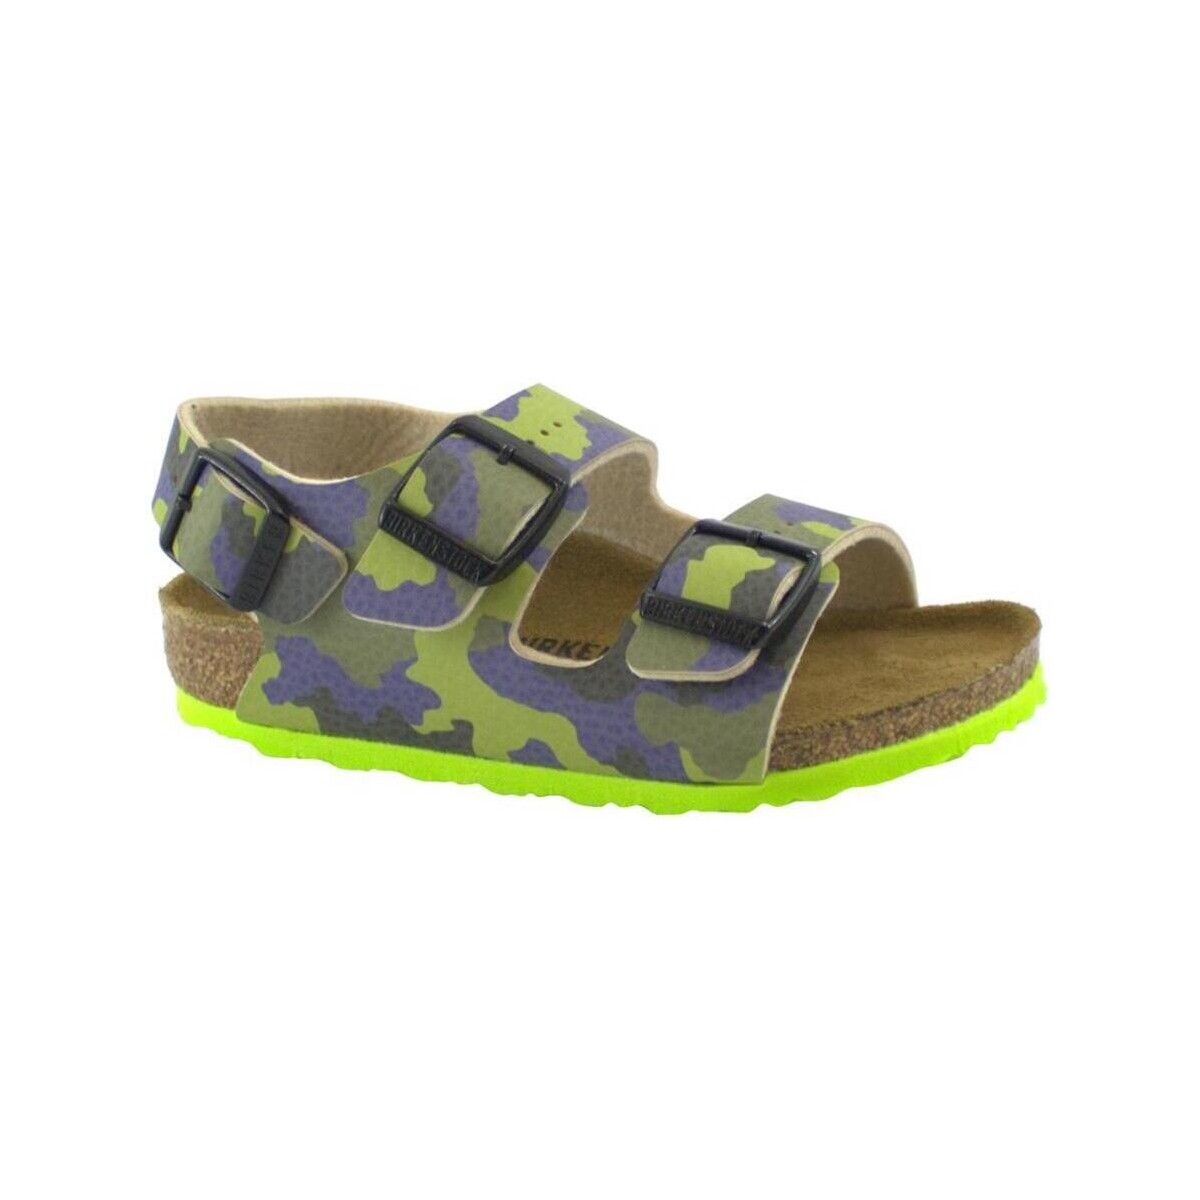 Sapatos Criança Sandálias Birkenstock BIR-RRR-1022221-CA-a Verde